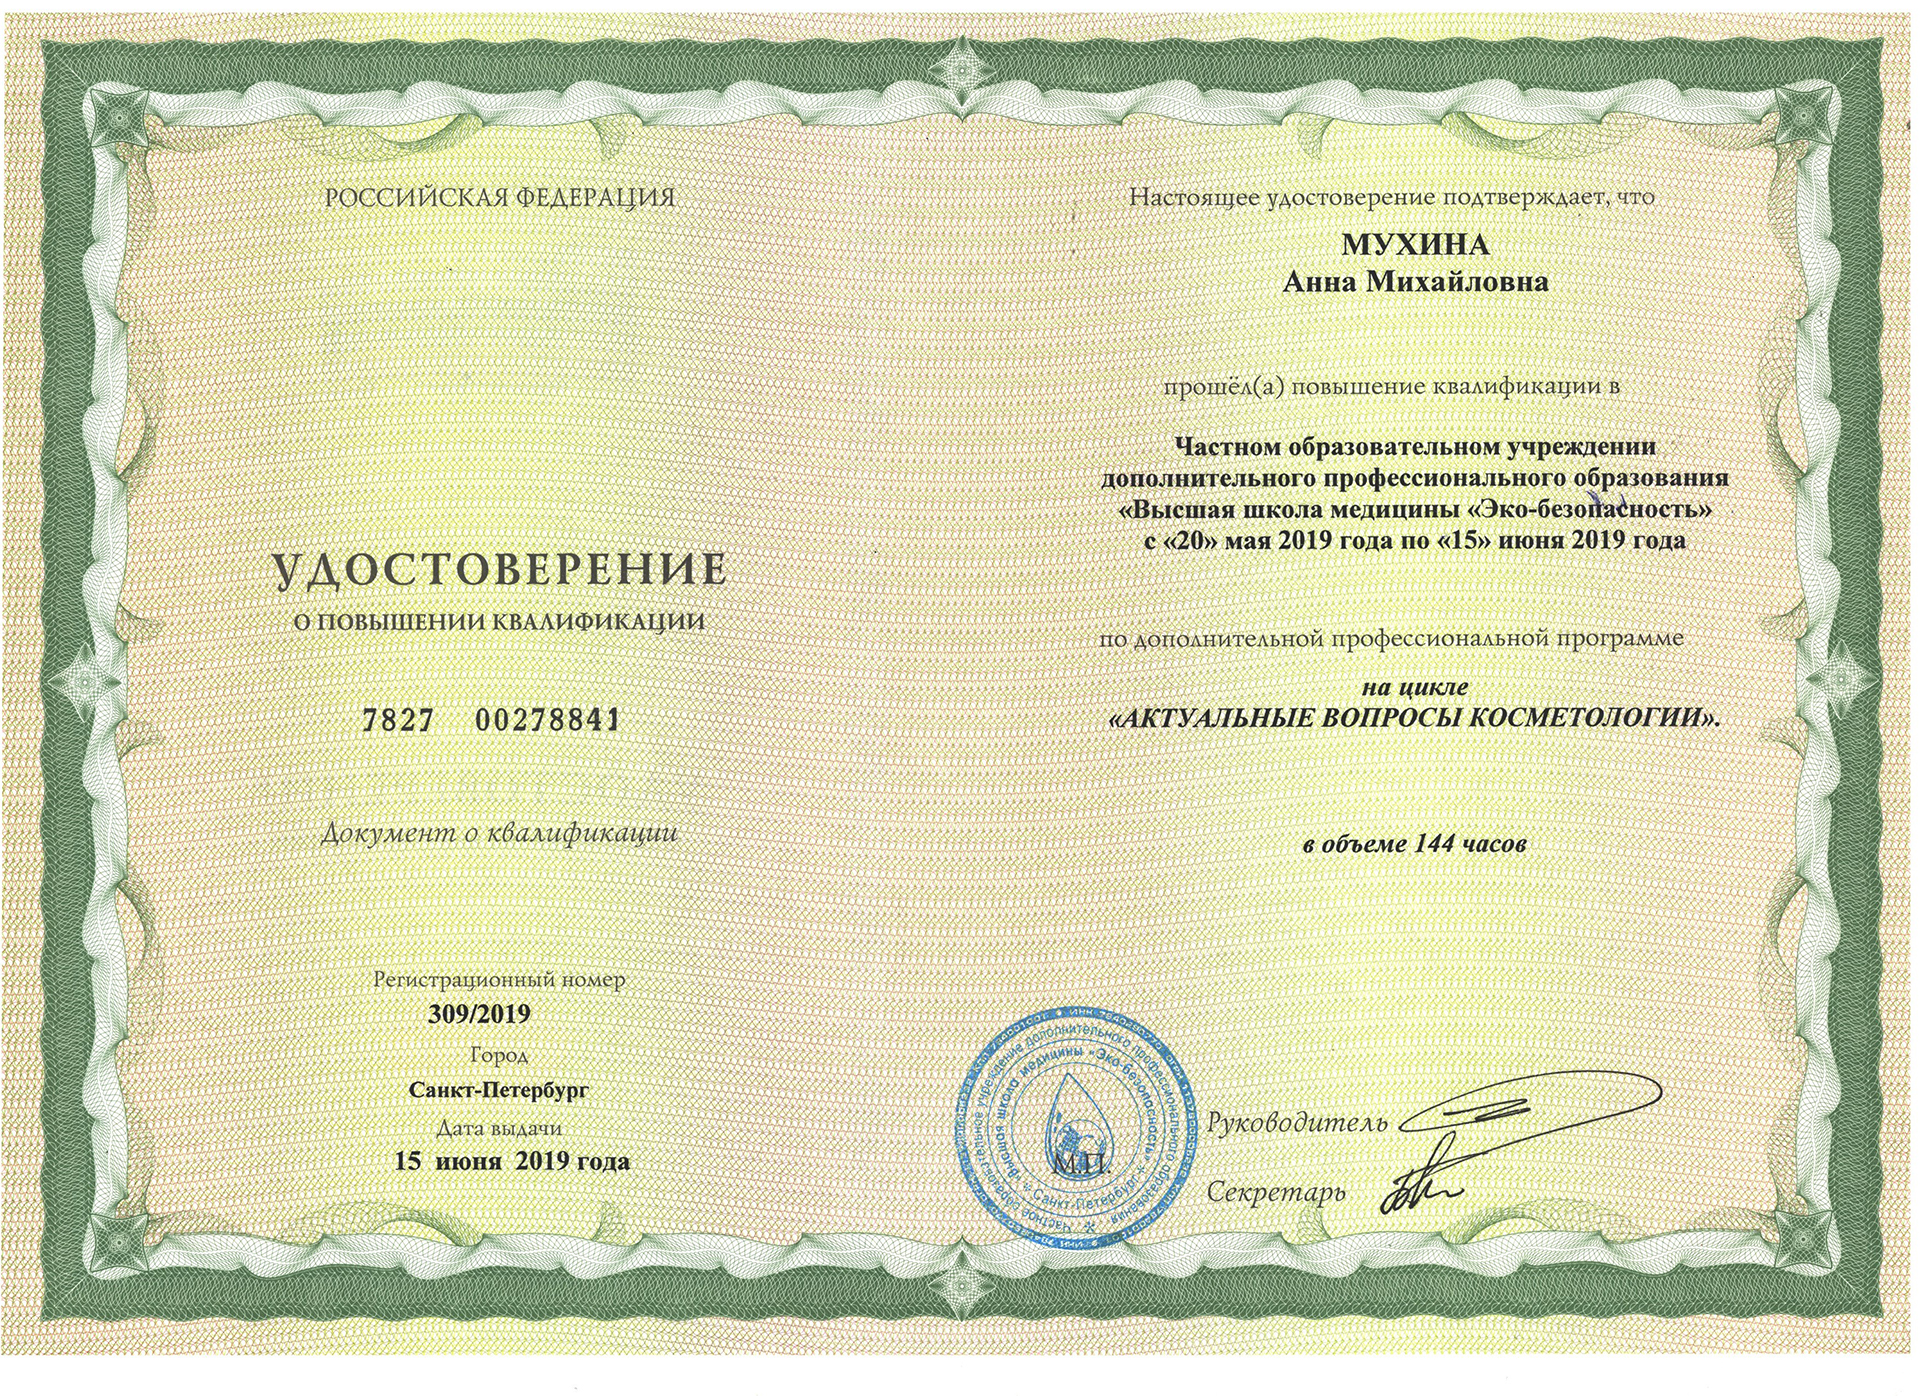 Сертификат — Удостоверение о повышении квалификации. Мухина Анна Михайловна